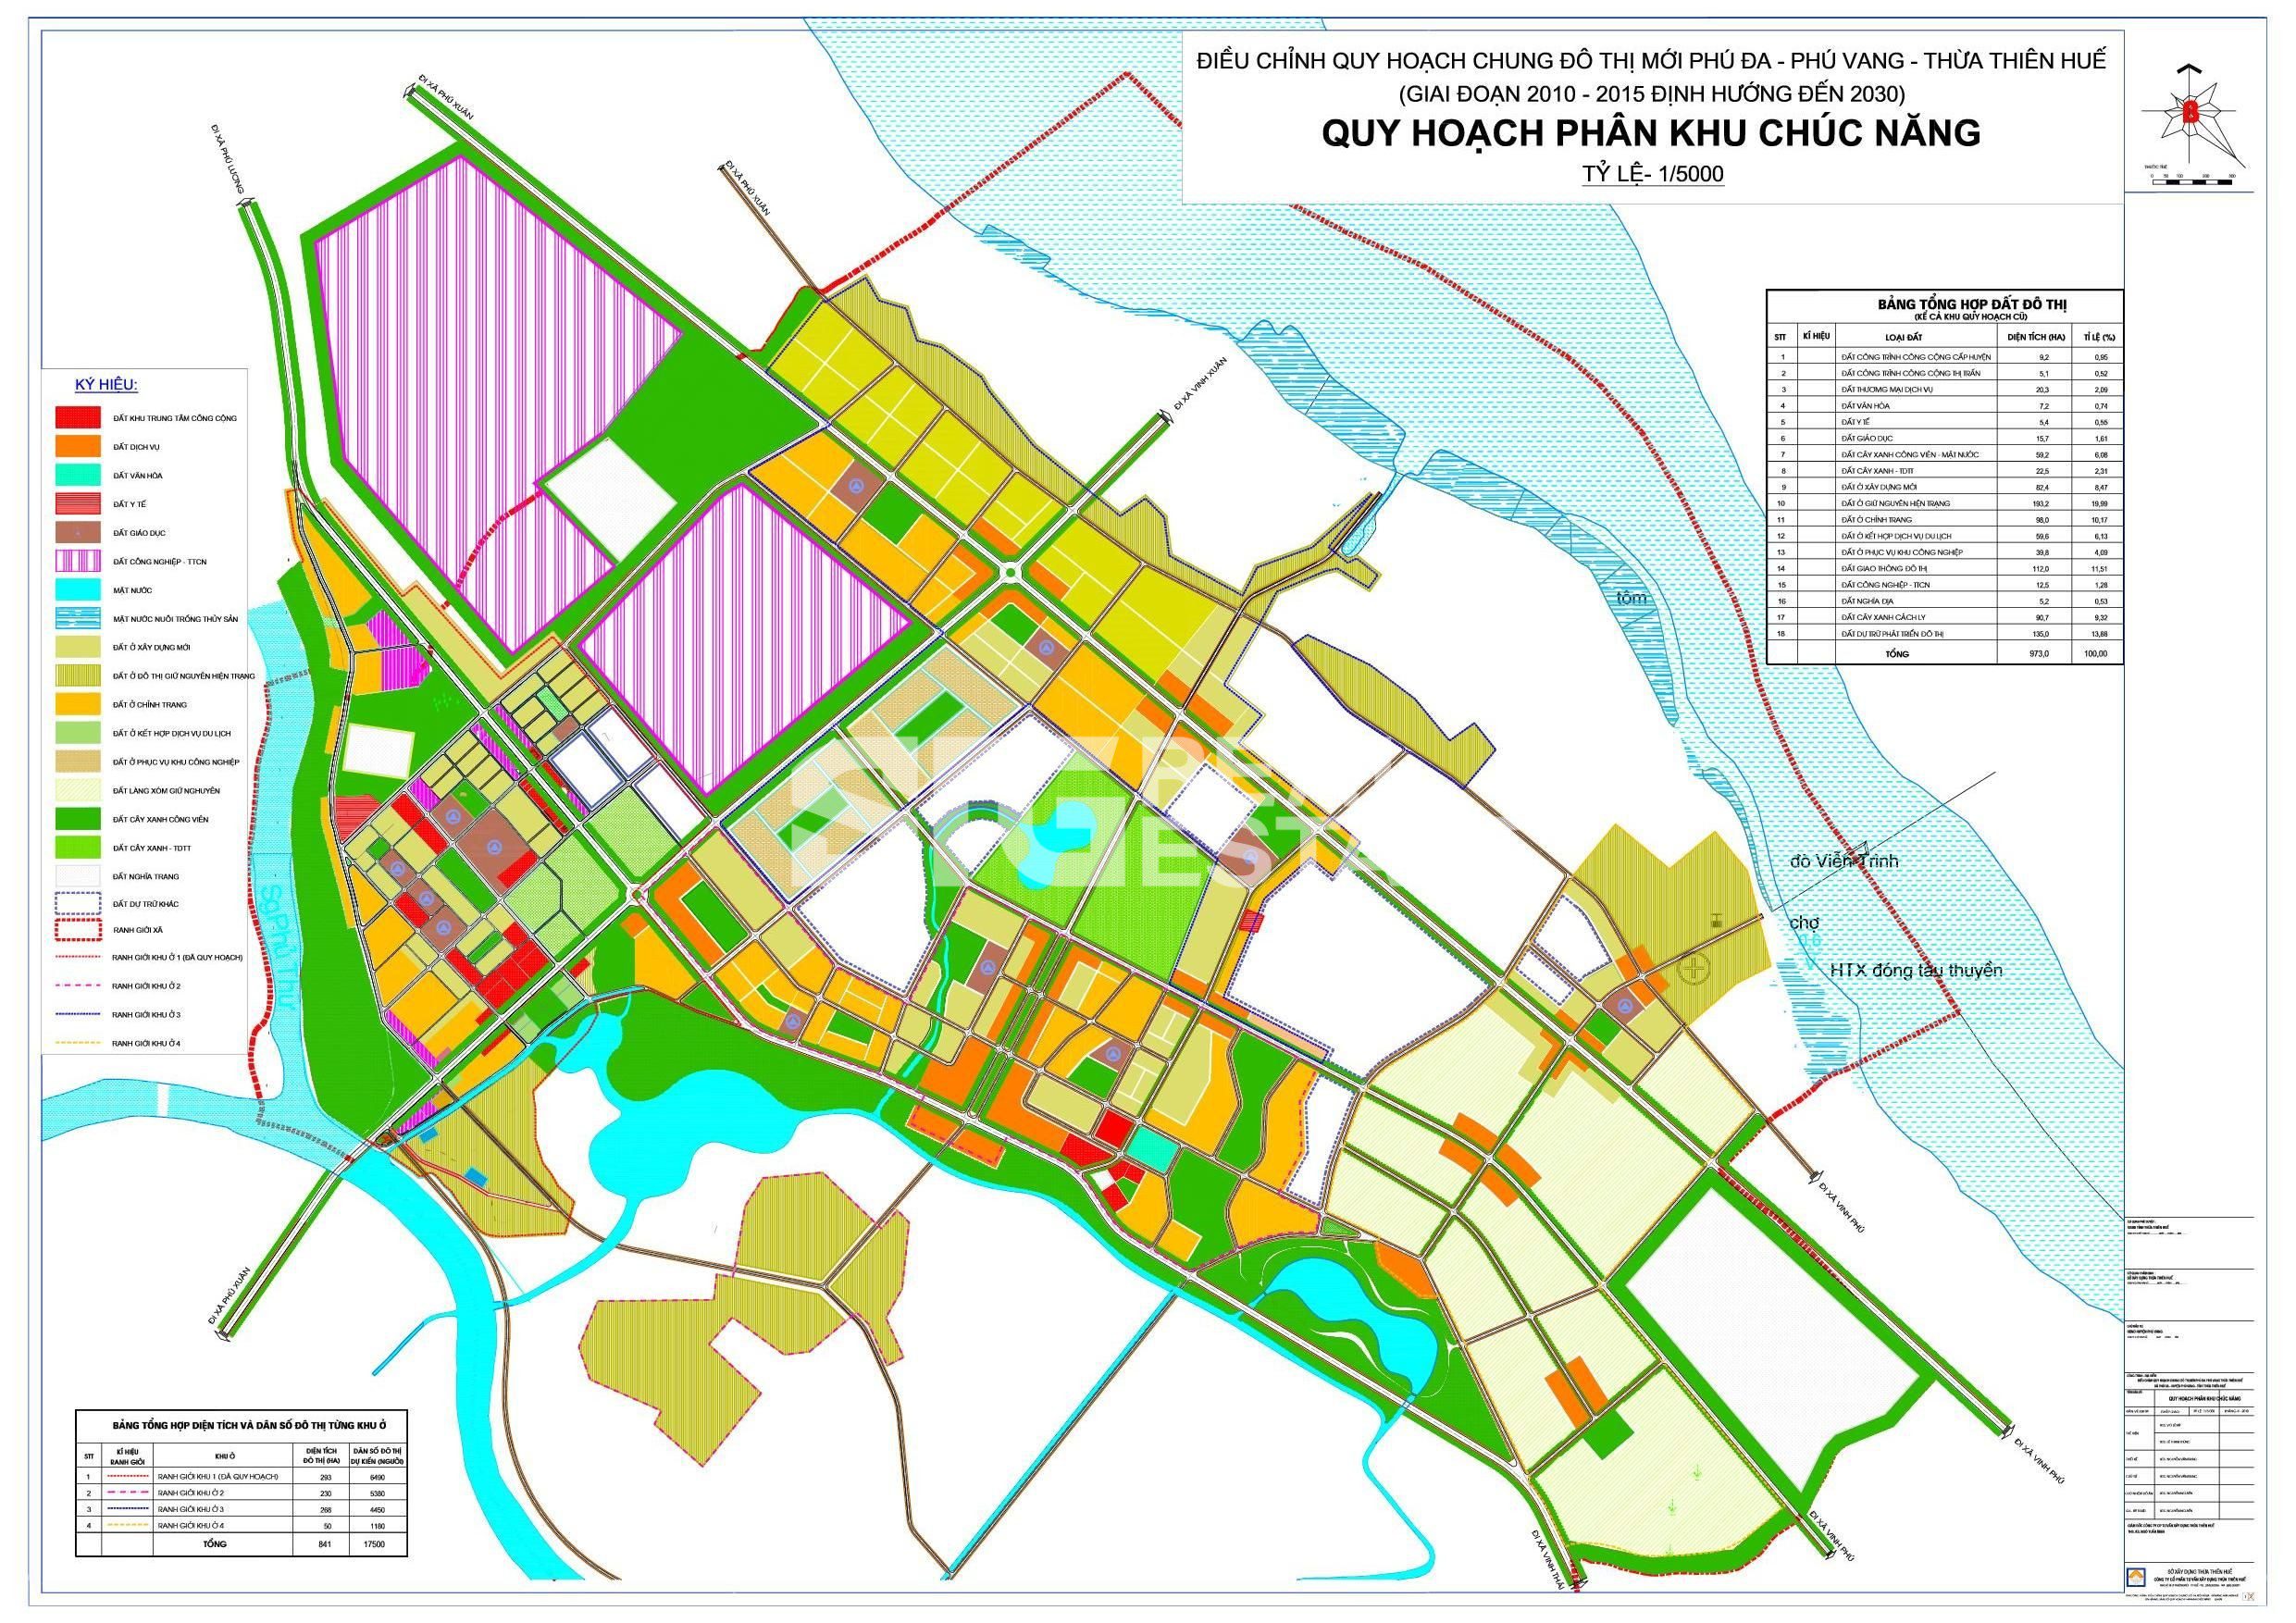 Tỉnh Thừa Thiên Huế cũng đã có bản đồ quy hoạch cho các khu vực trong tỉnh. Điều này sẽ giúp cho quản lý và phát triển của tỉnh trở nên hiệu quả hơn. Nhấn vào hình ảnh liên quan để xem chi tiết bản đồ.